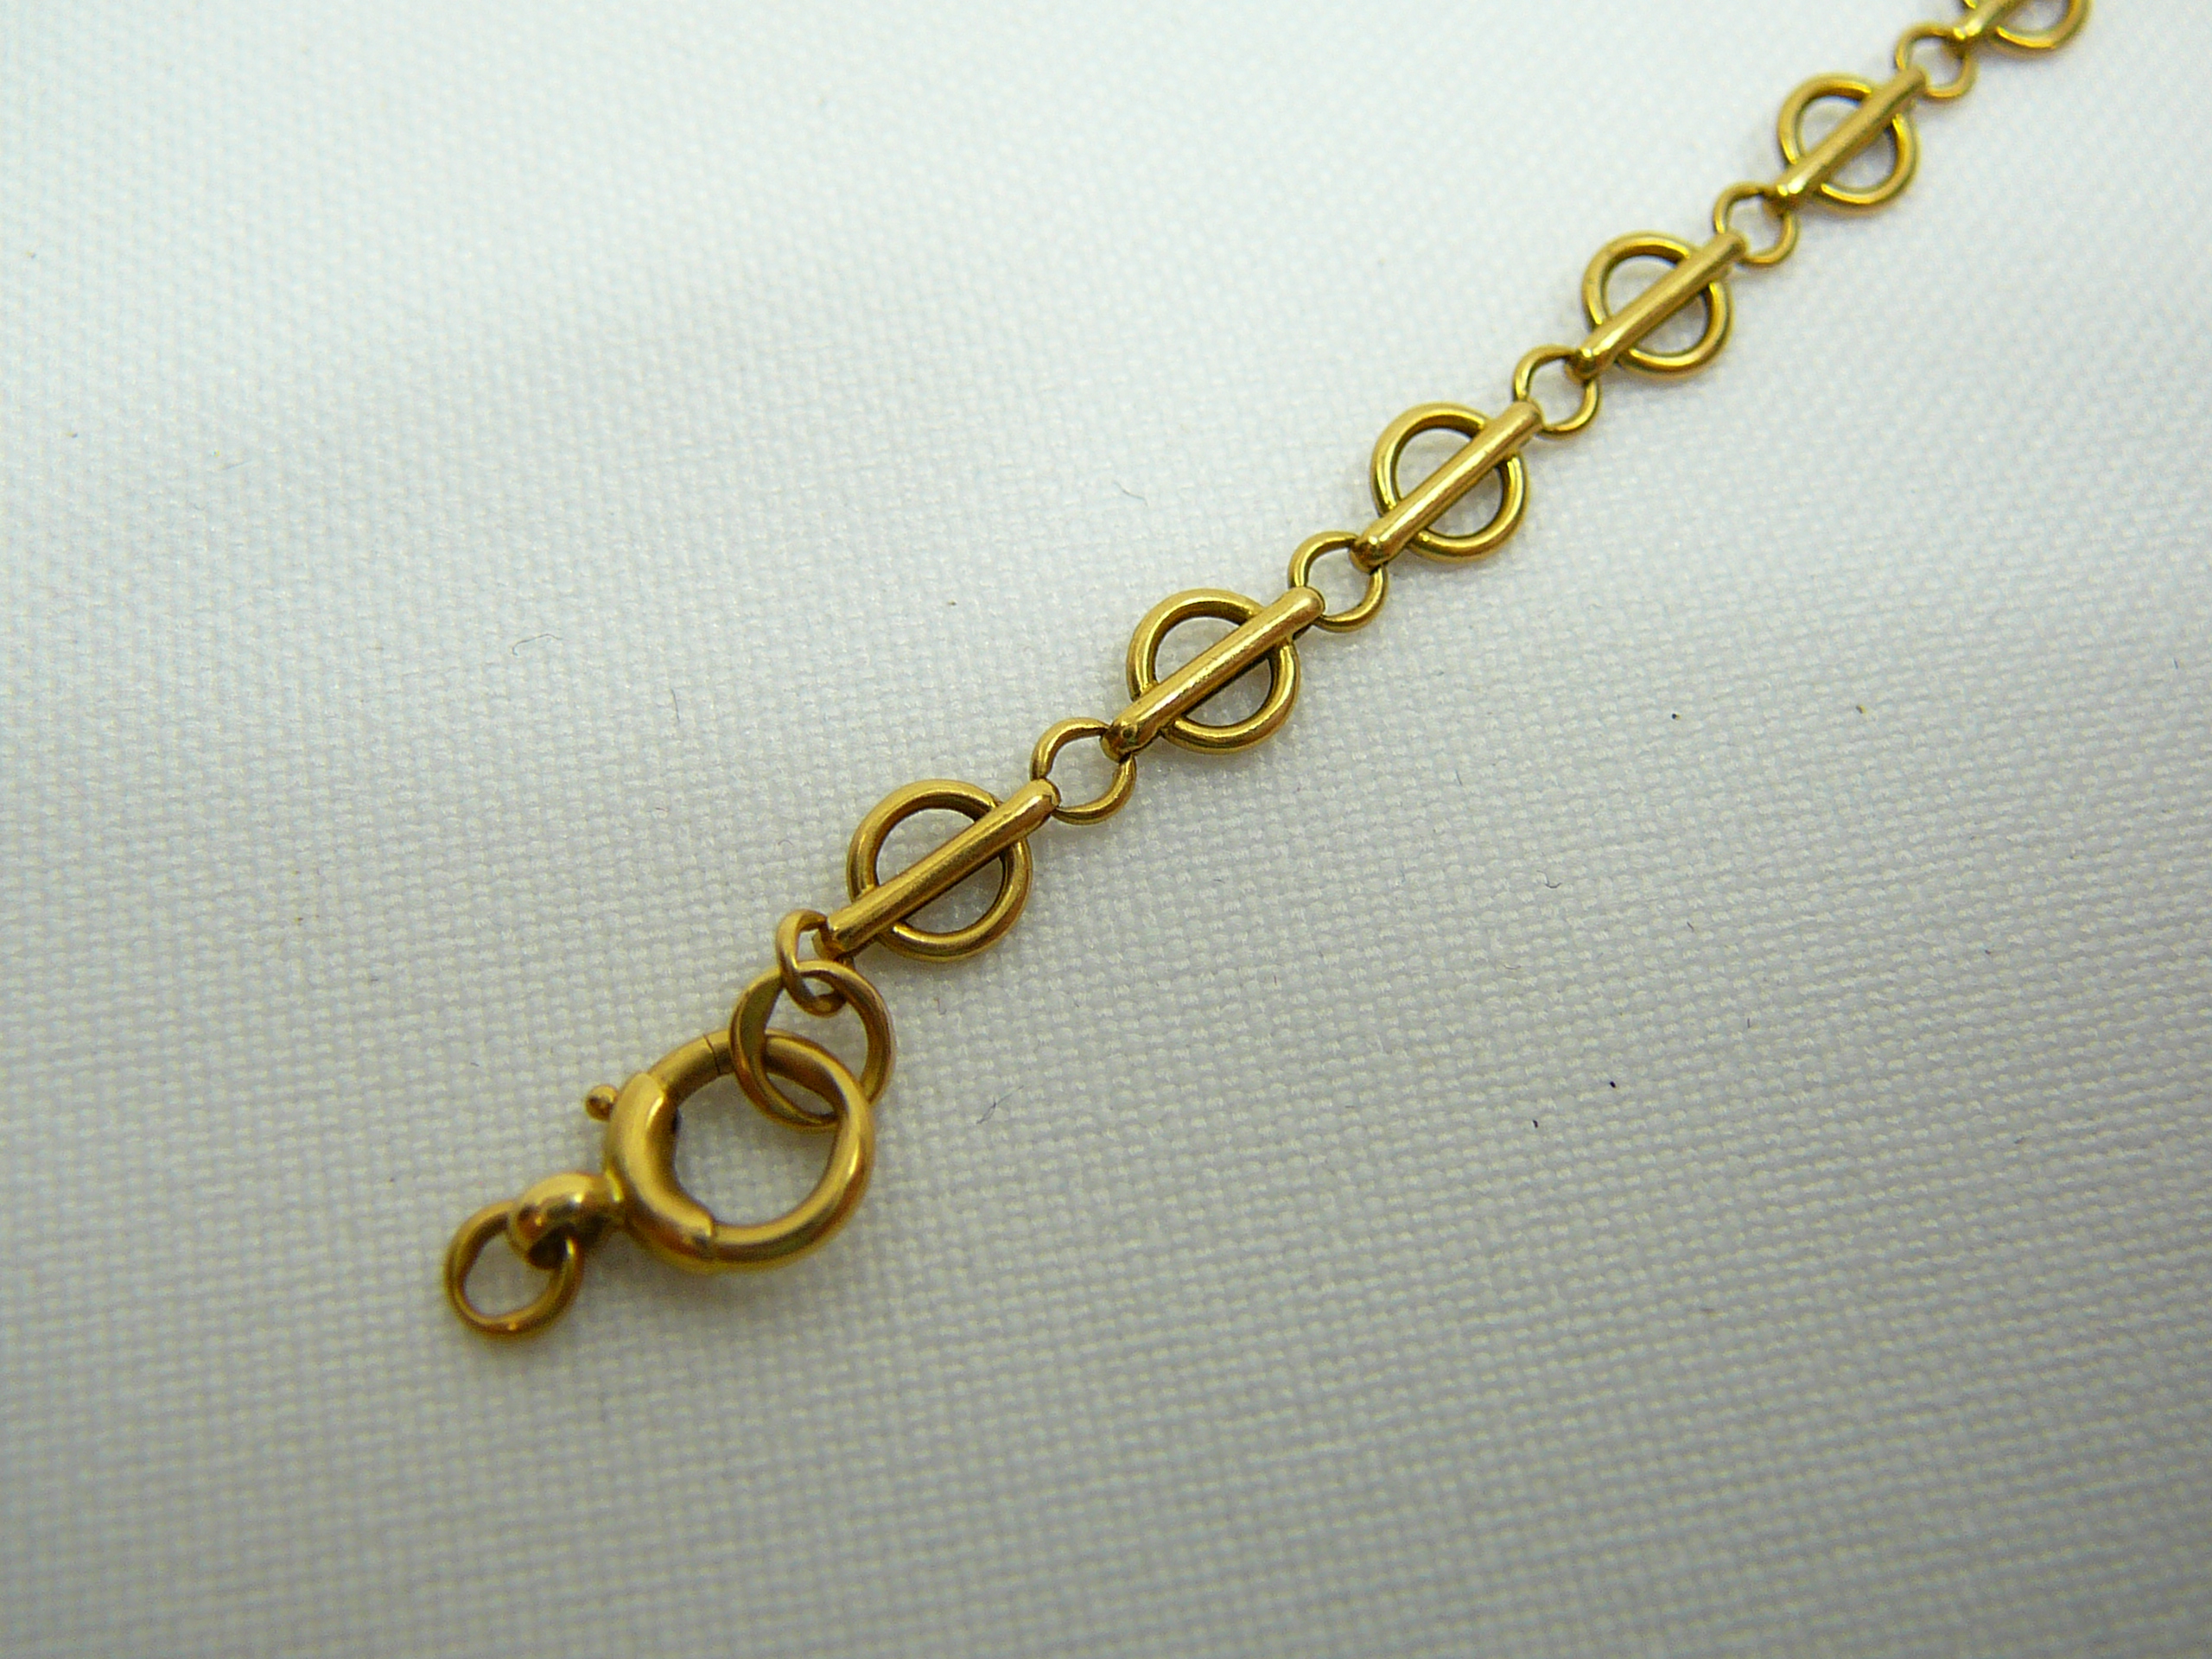 18 Carat Gold Bracelet - Image 2 of 2